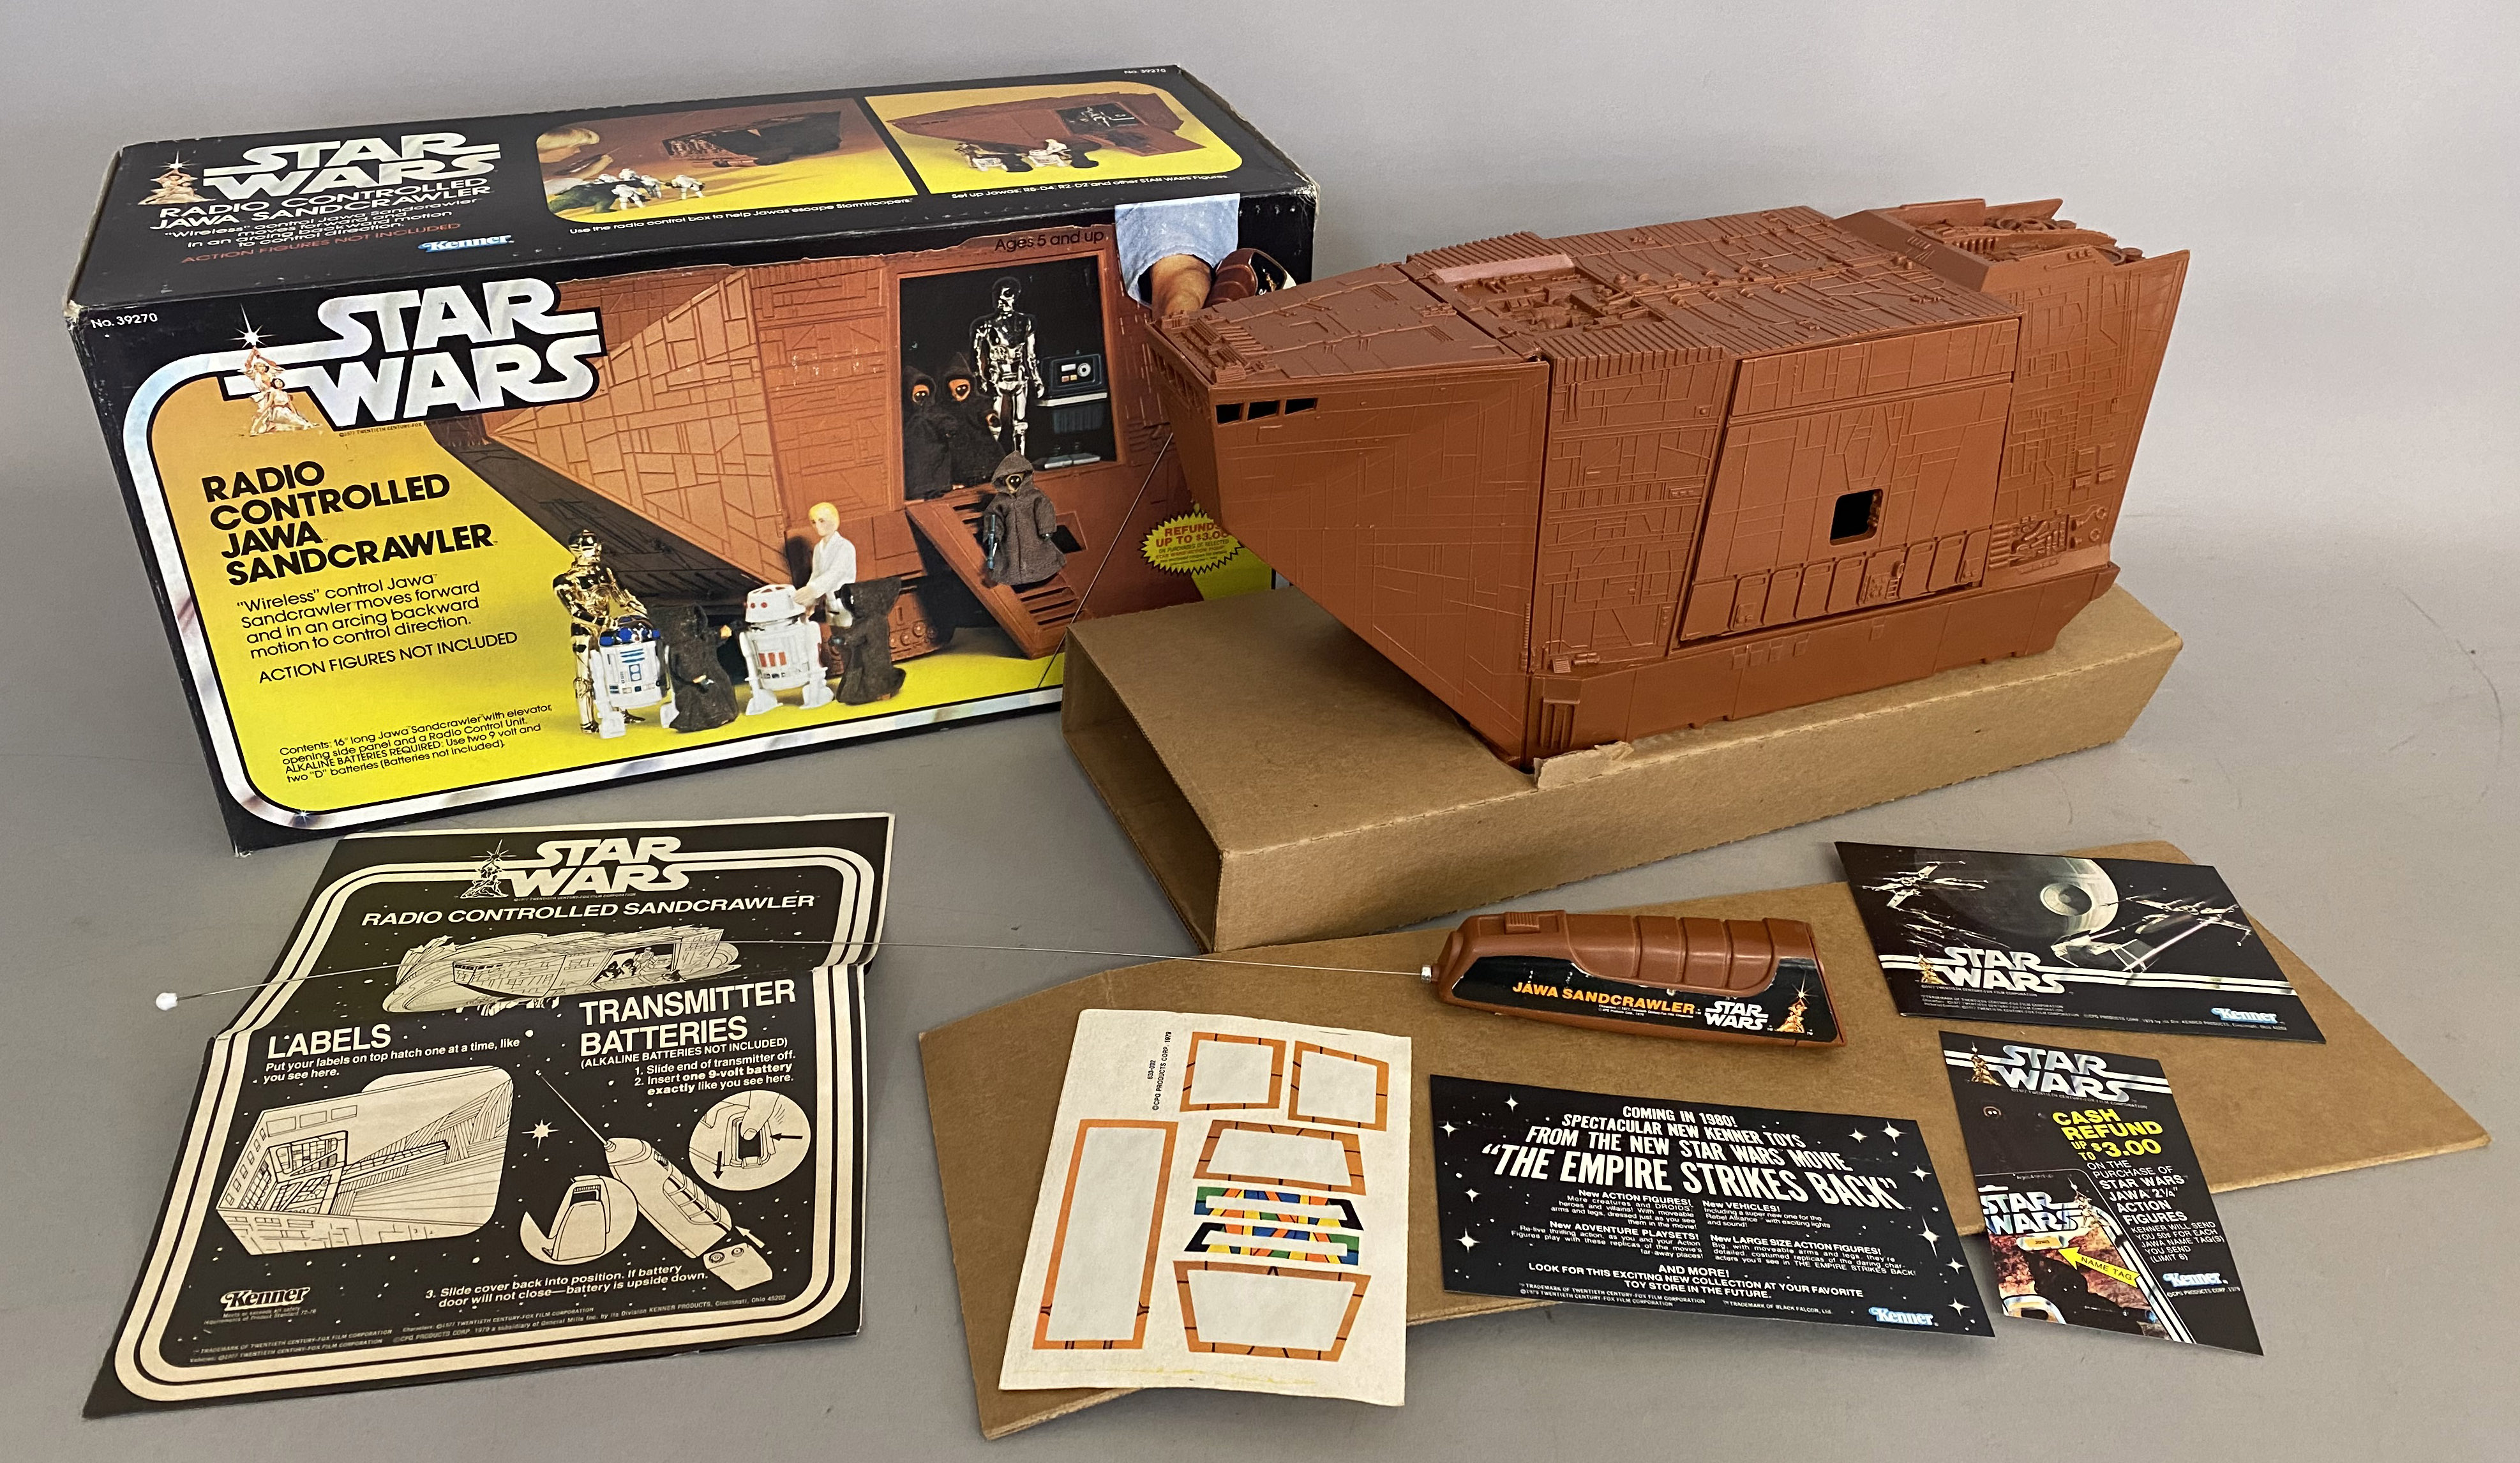 Kenner Star Wars 39270 Radio Controlled Jawa Sandcrawler in original box.